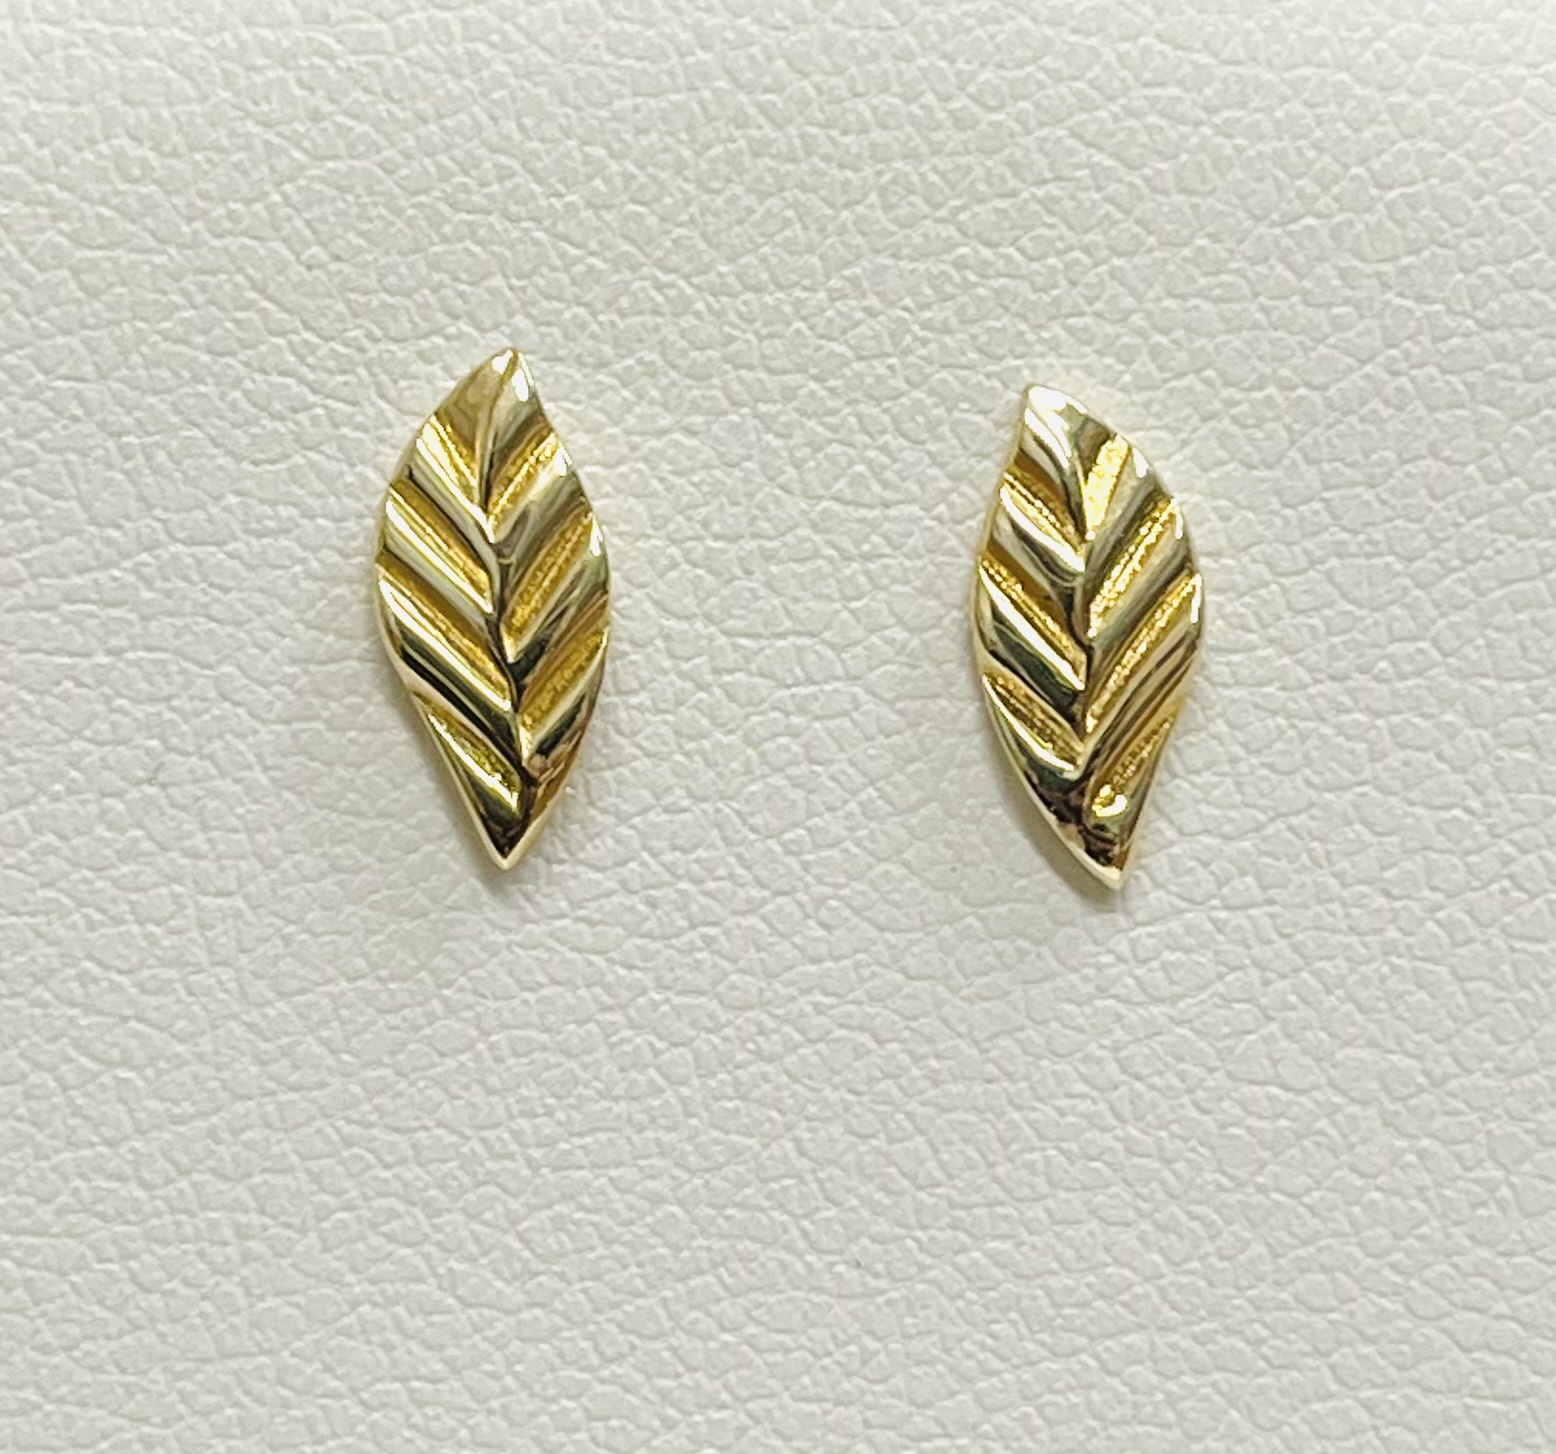 The secret garden oak leaf earrings by Pippa Small | Finematter